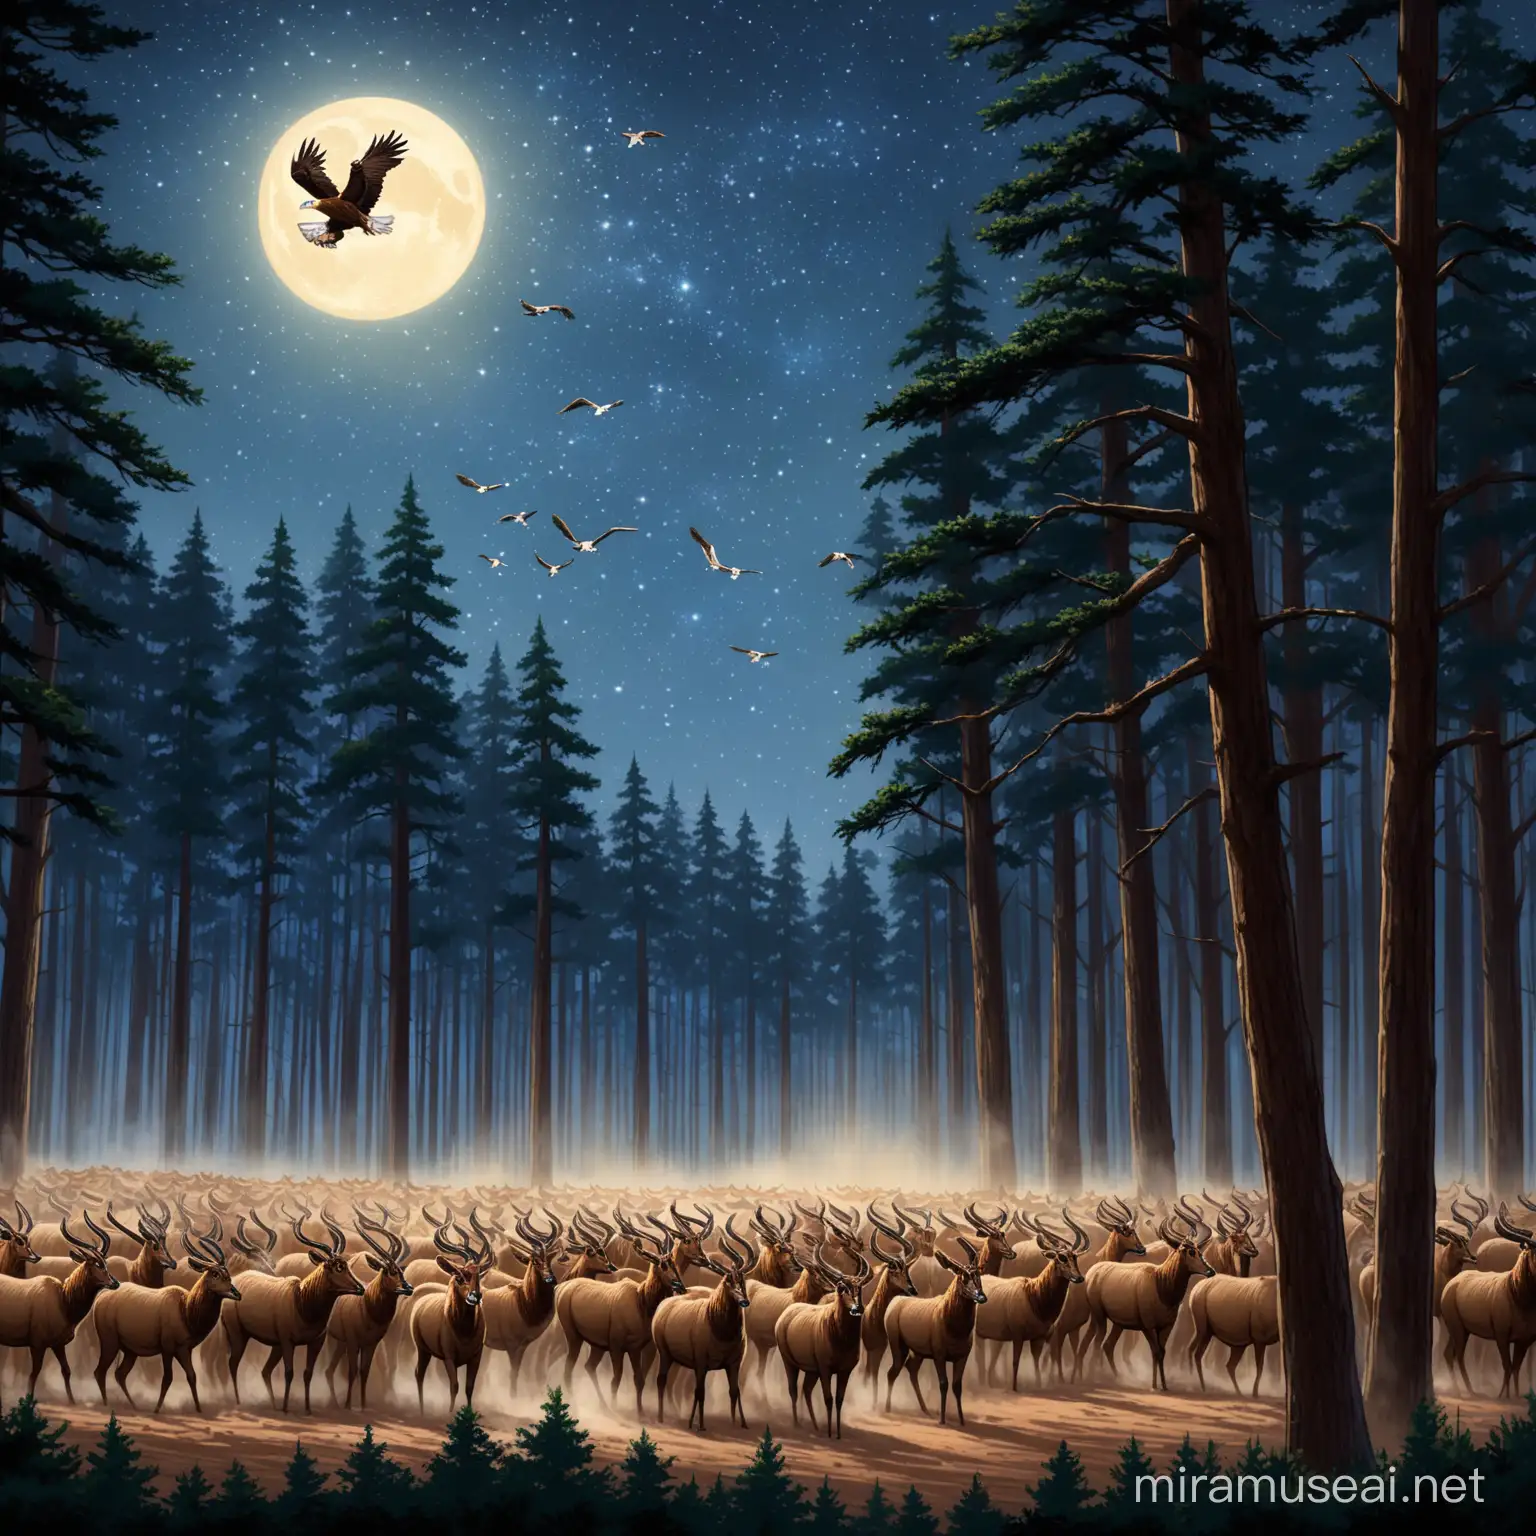 нарисуй как много орлов и соколов выгоняют много антилоп из леса сделай более реалистичным, и чтобы была ночь и много деревьев 